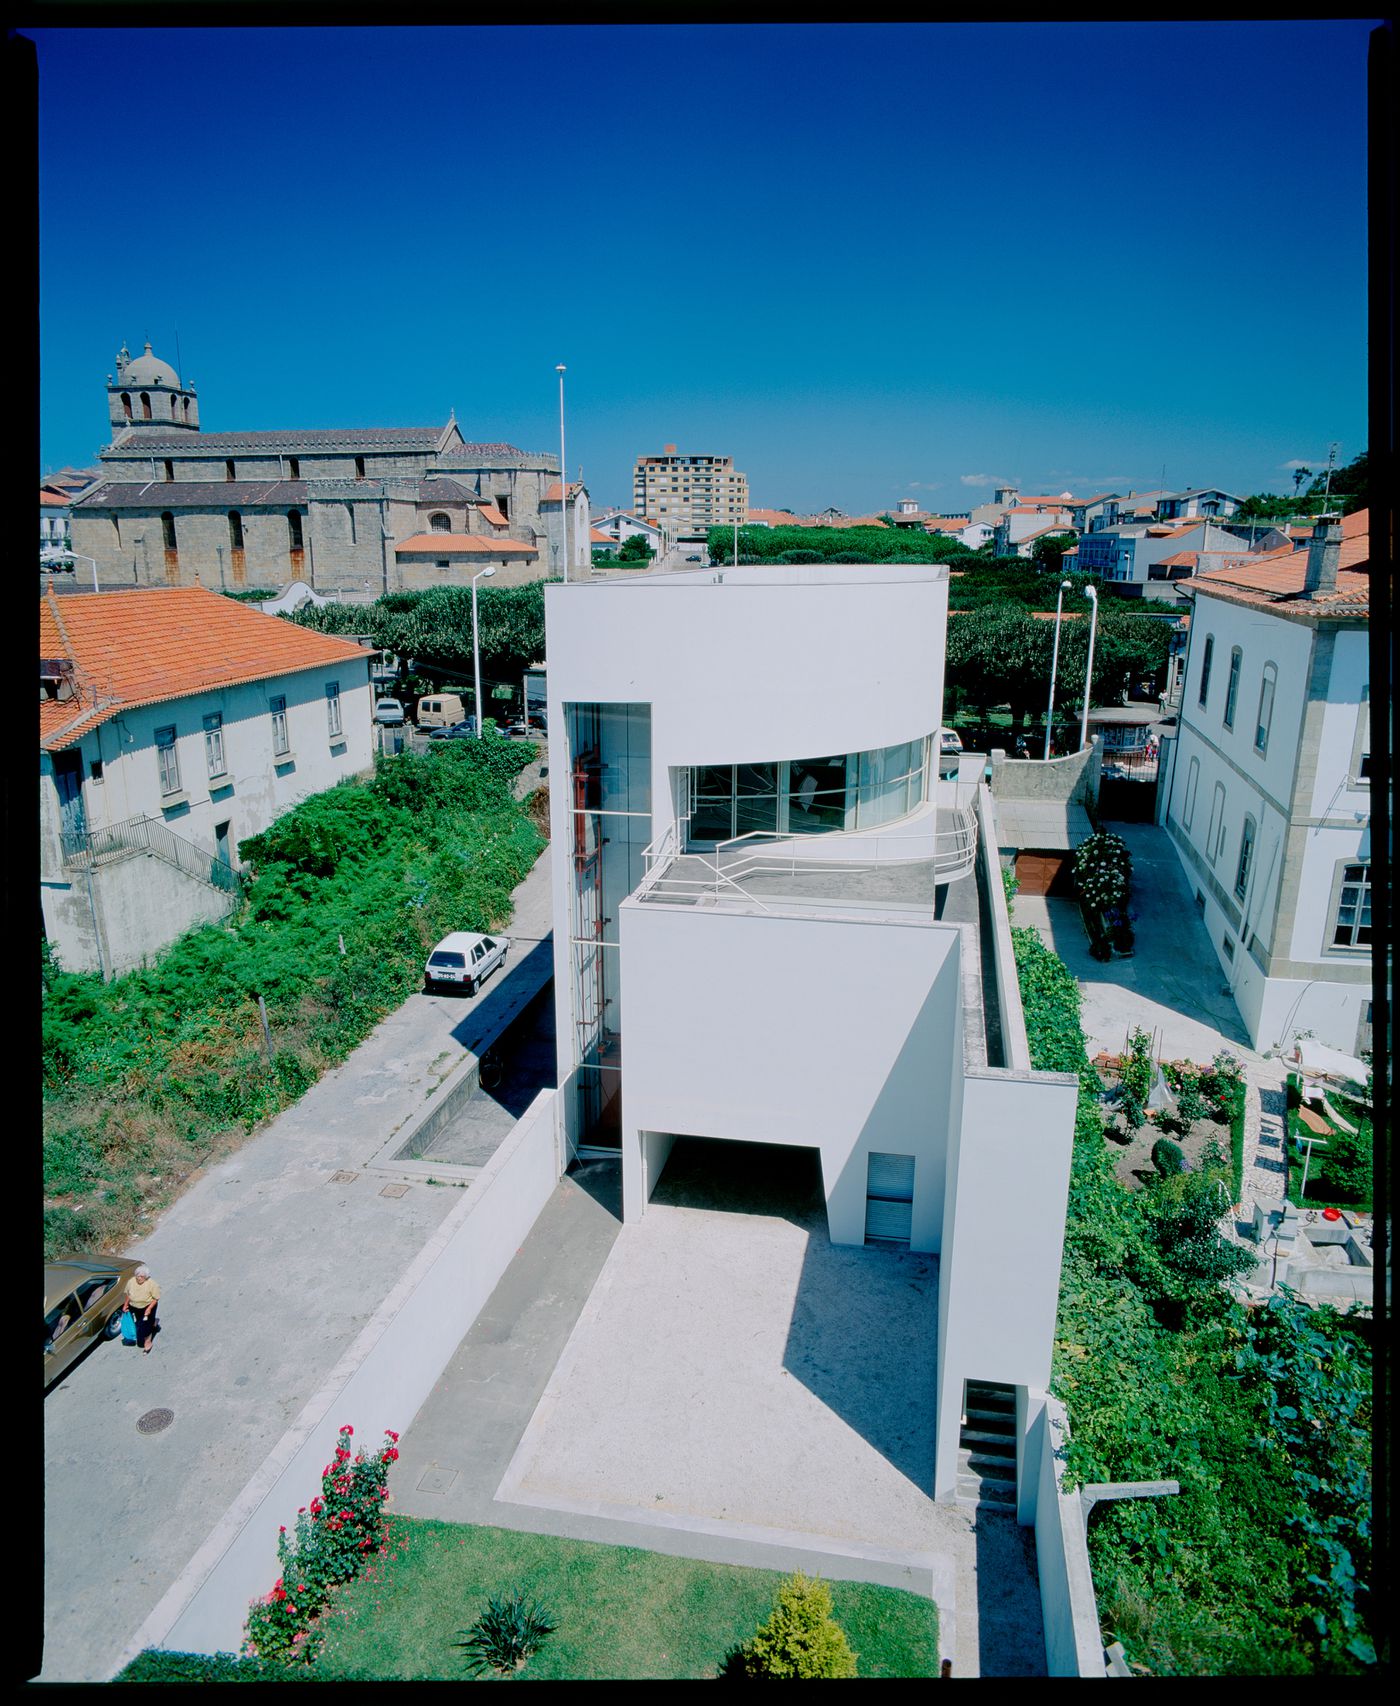 Rear view of Banco Borges & Irmão II [Borges & Irmão bank II], Vila do Conde, Portugal